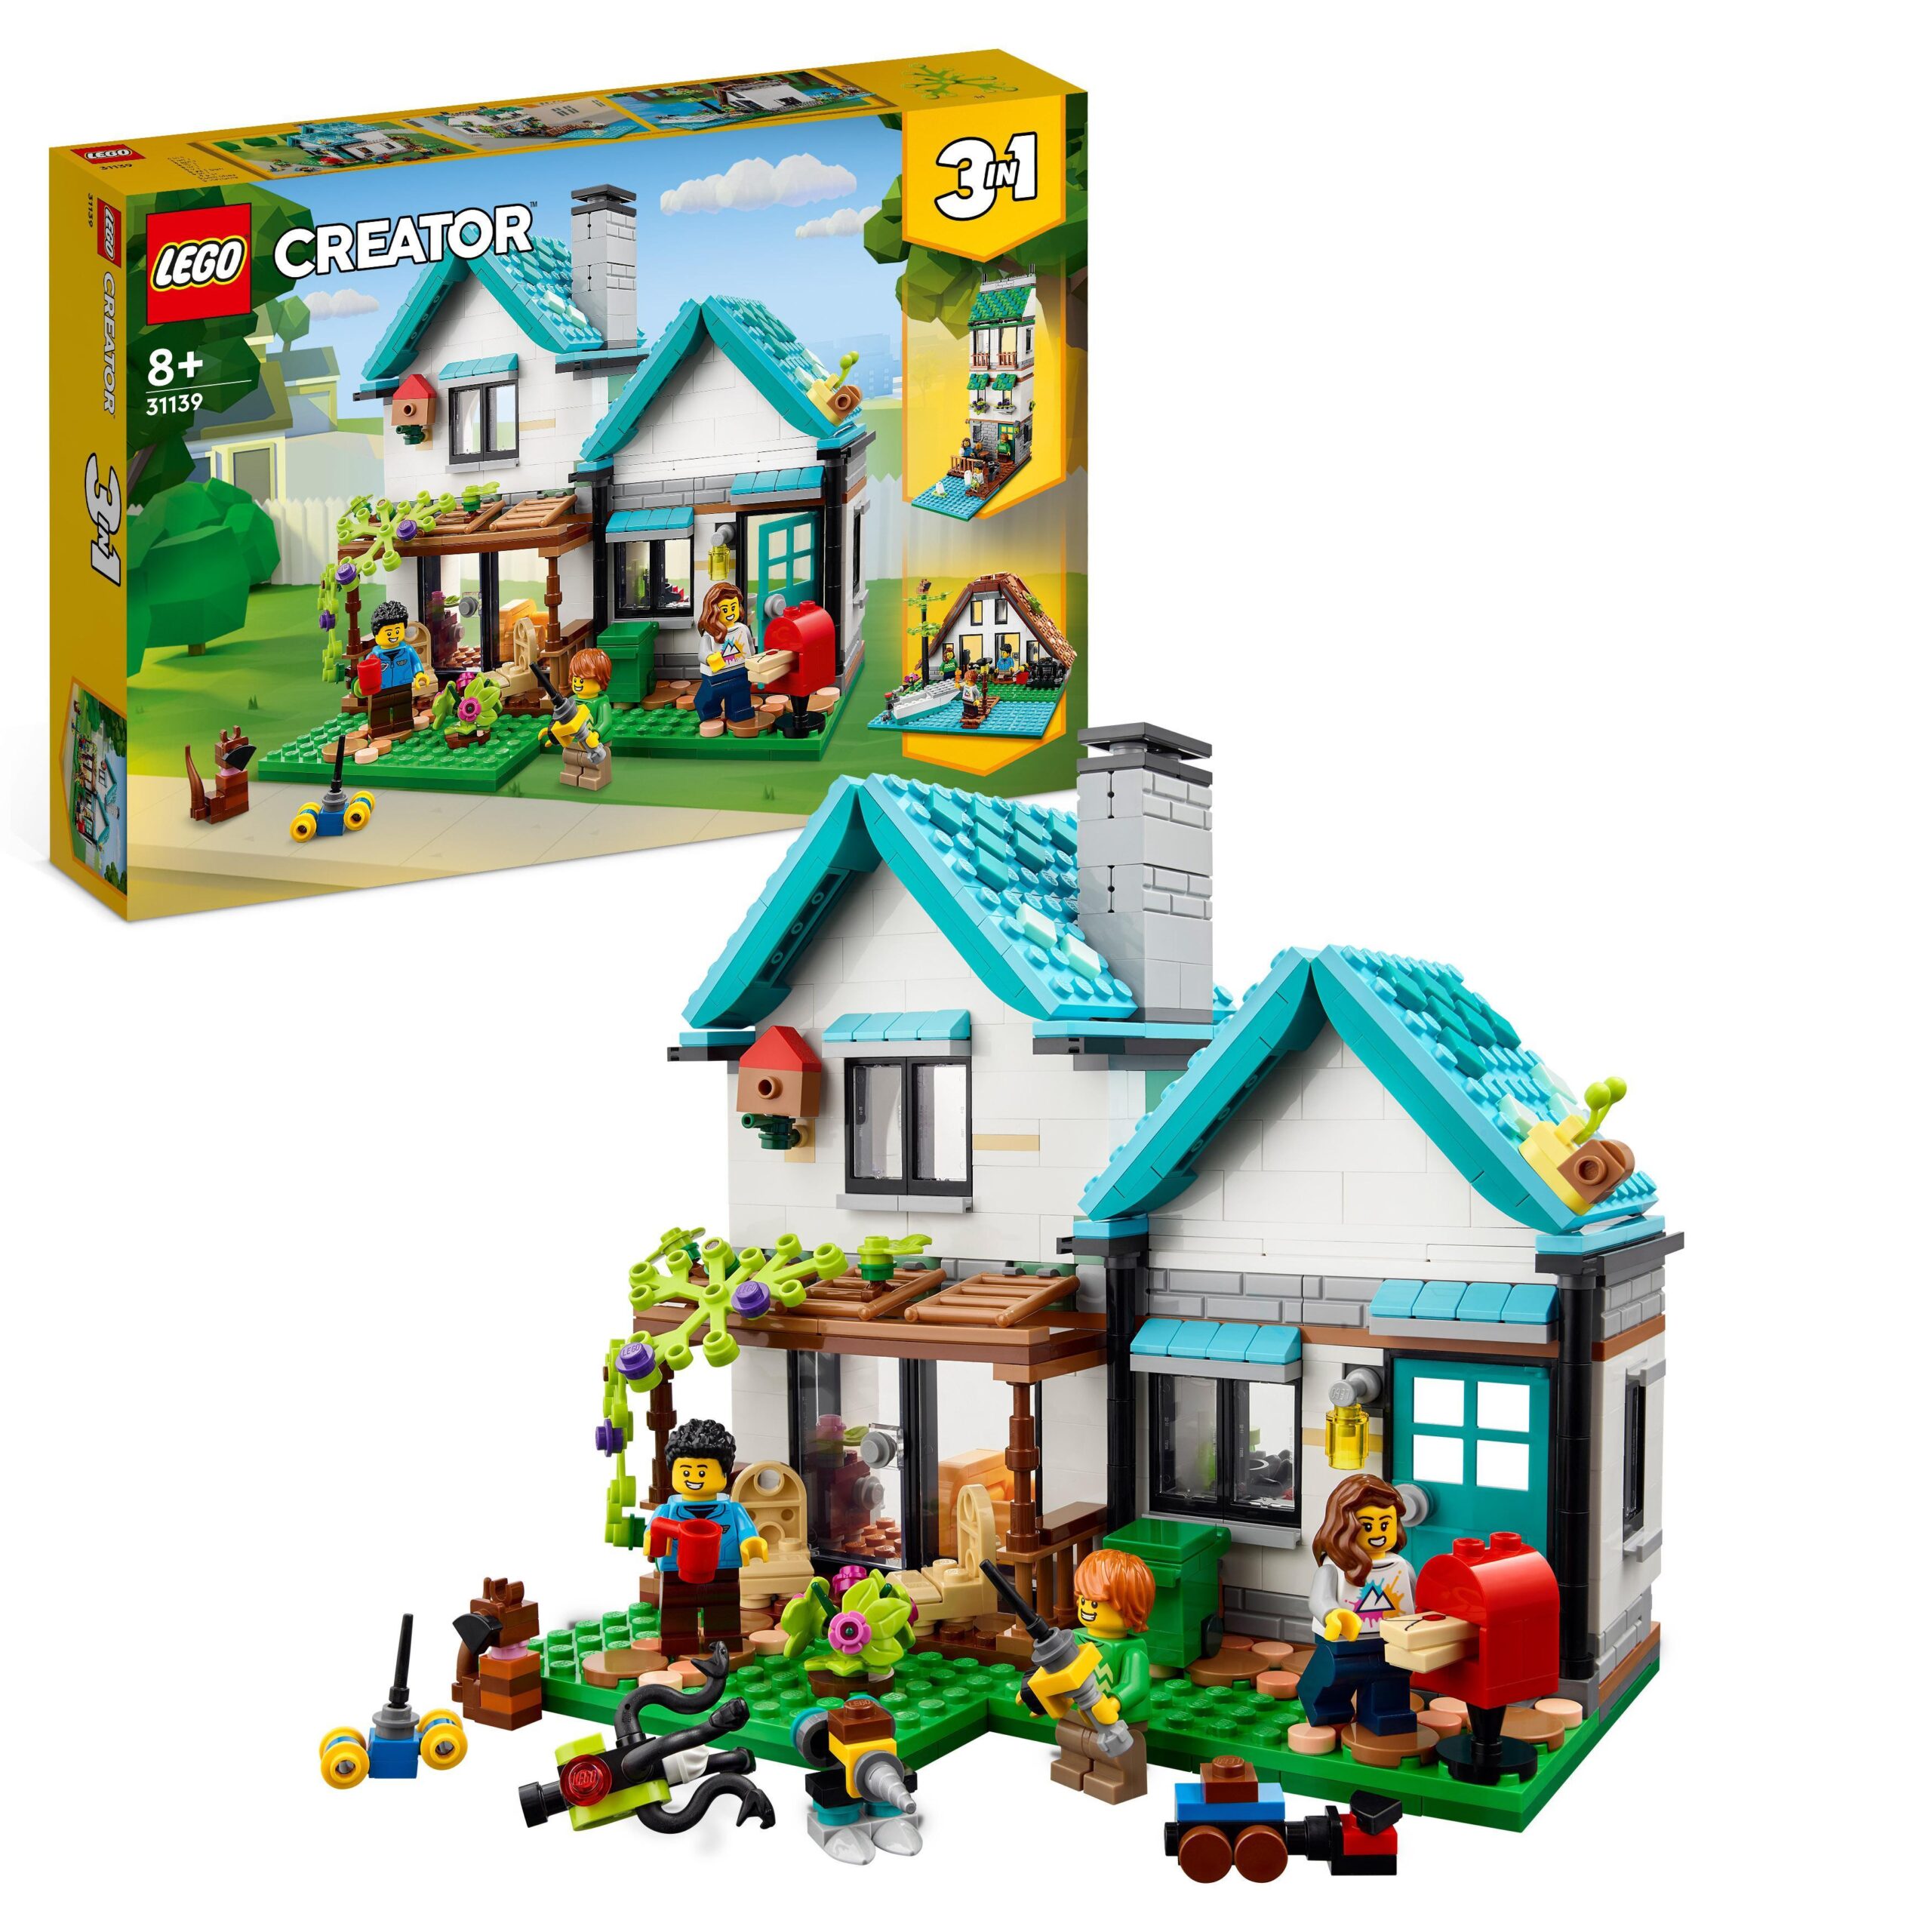 Lego creator 31139 casa accogliente, modellino da costruire di case giocattolo 3 in 1, idea regalo per bambini - LEGO CREATOR